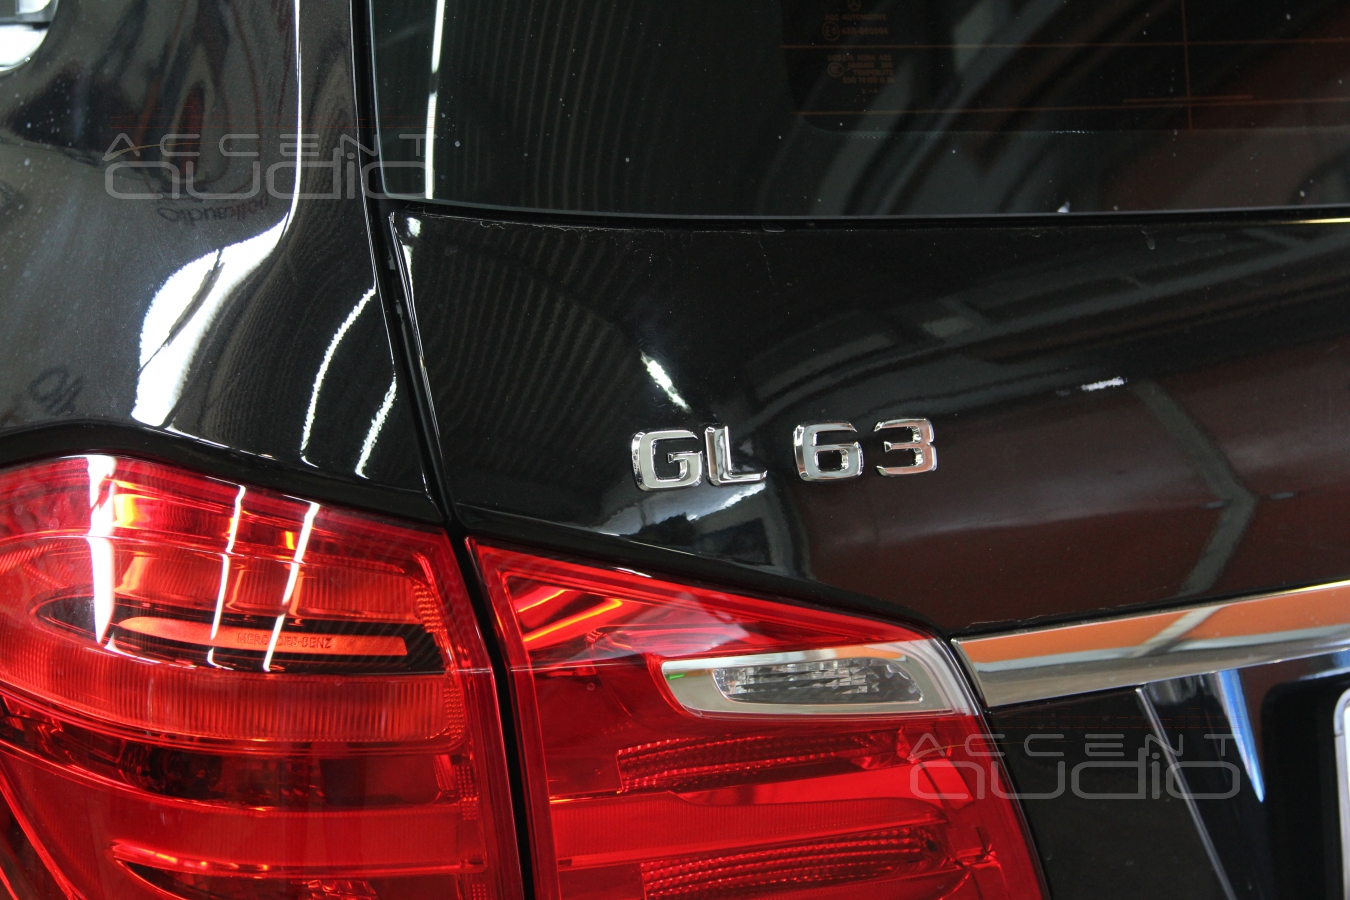 Mercedes GL 63 AMG: сделайте, чтобы звучало достойно